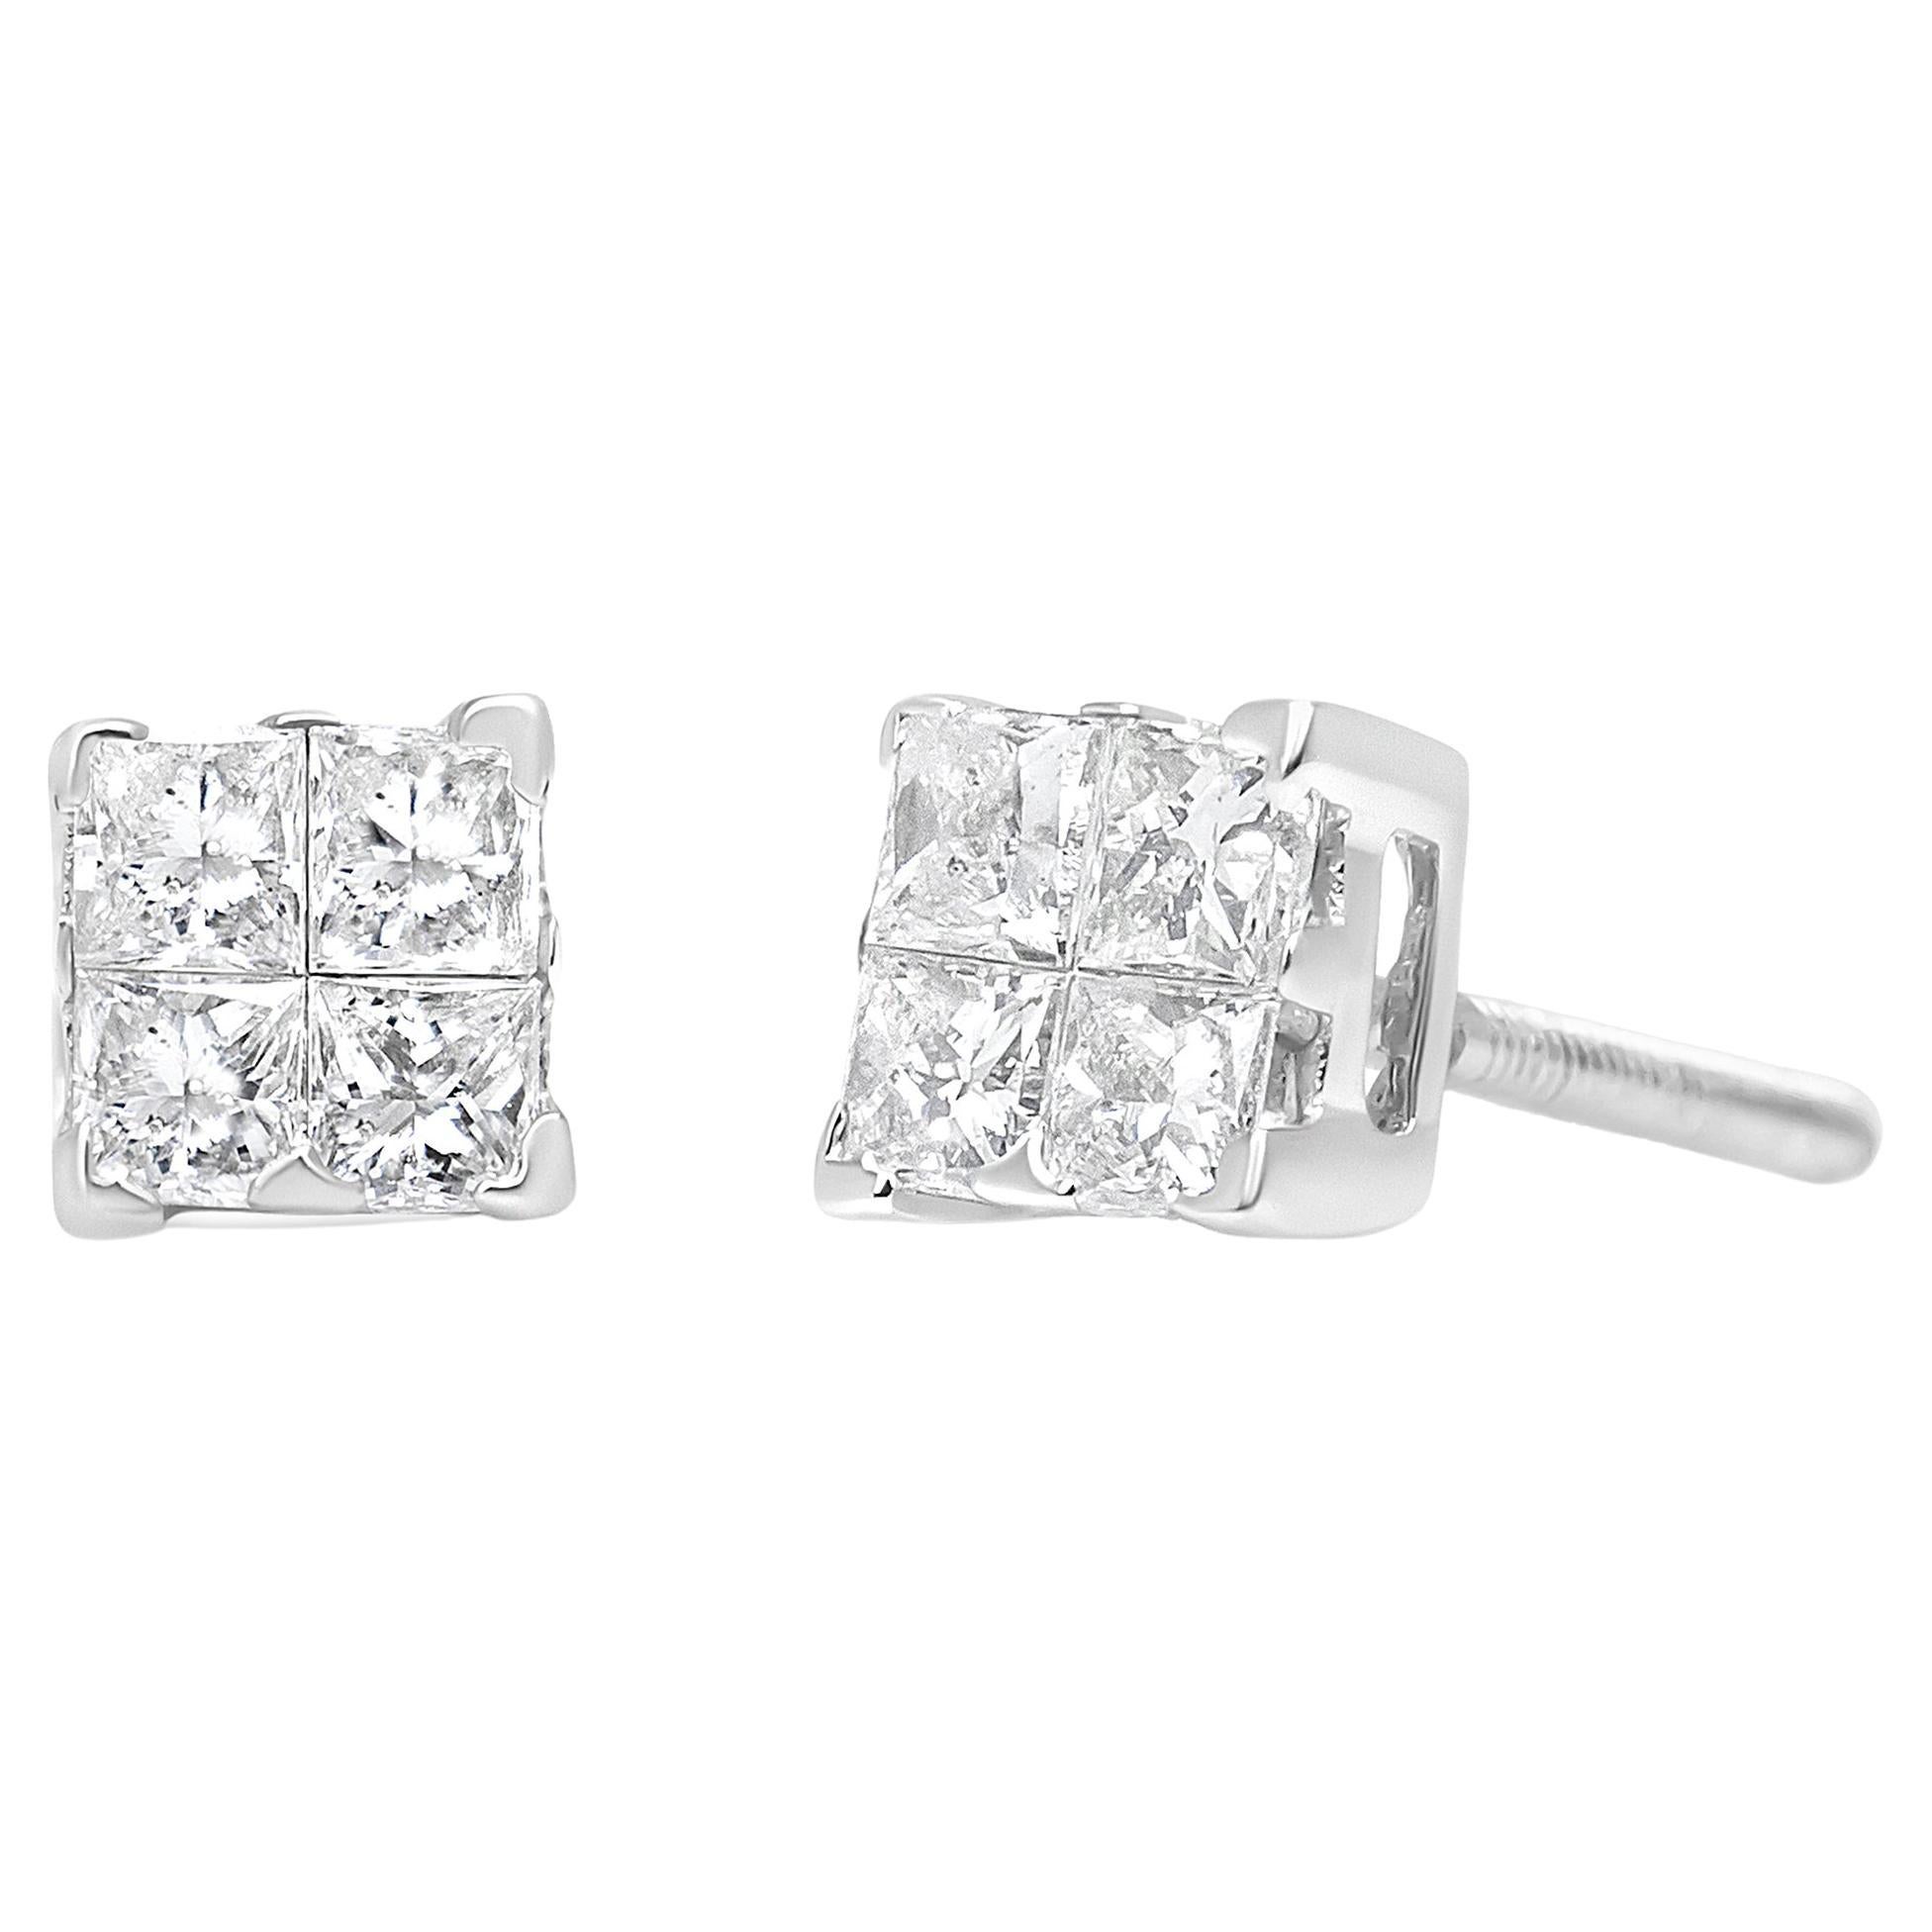 Men's Women's 925 Sterling Silver  Diamond Princess Cut Push Back Earrings 